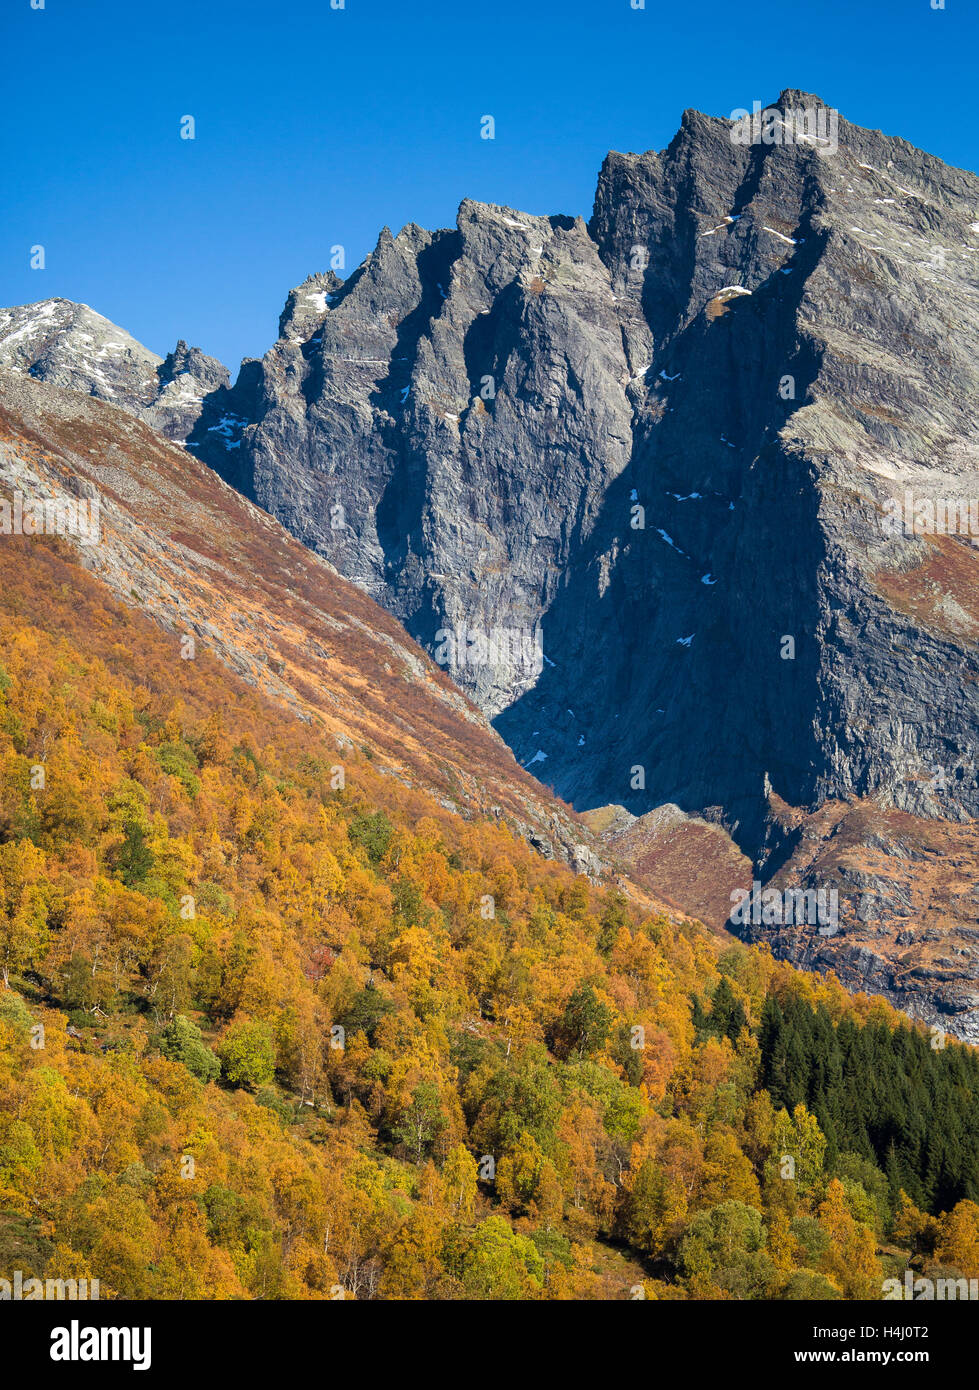 Un soleado día de otoño en el fantástico paisaje. Un colorido bosque de otoño en primer plano con una alta montaña empinada detrás. Foto de stock